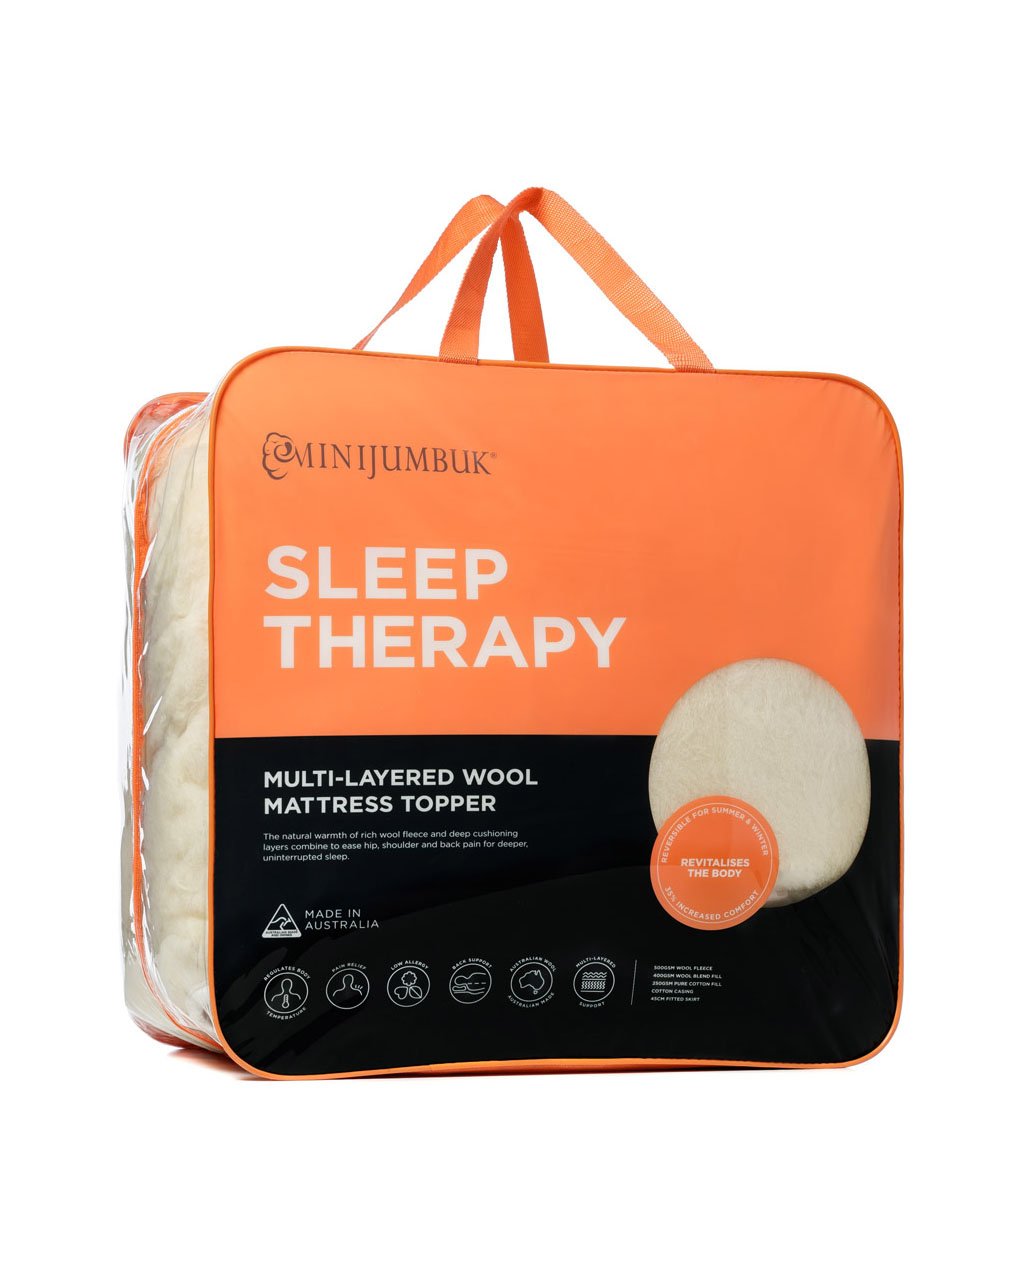 MiniJumbuk Sleep Therapy Mattress Topper - Pack